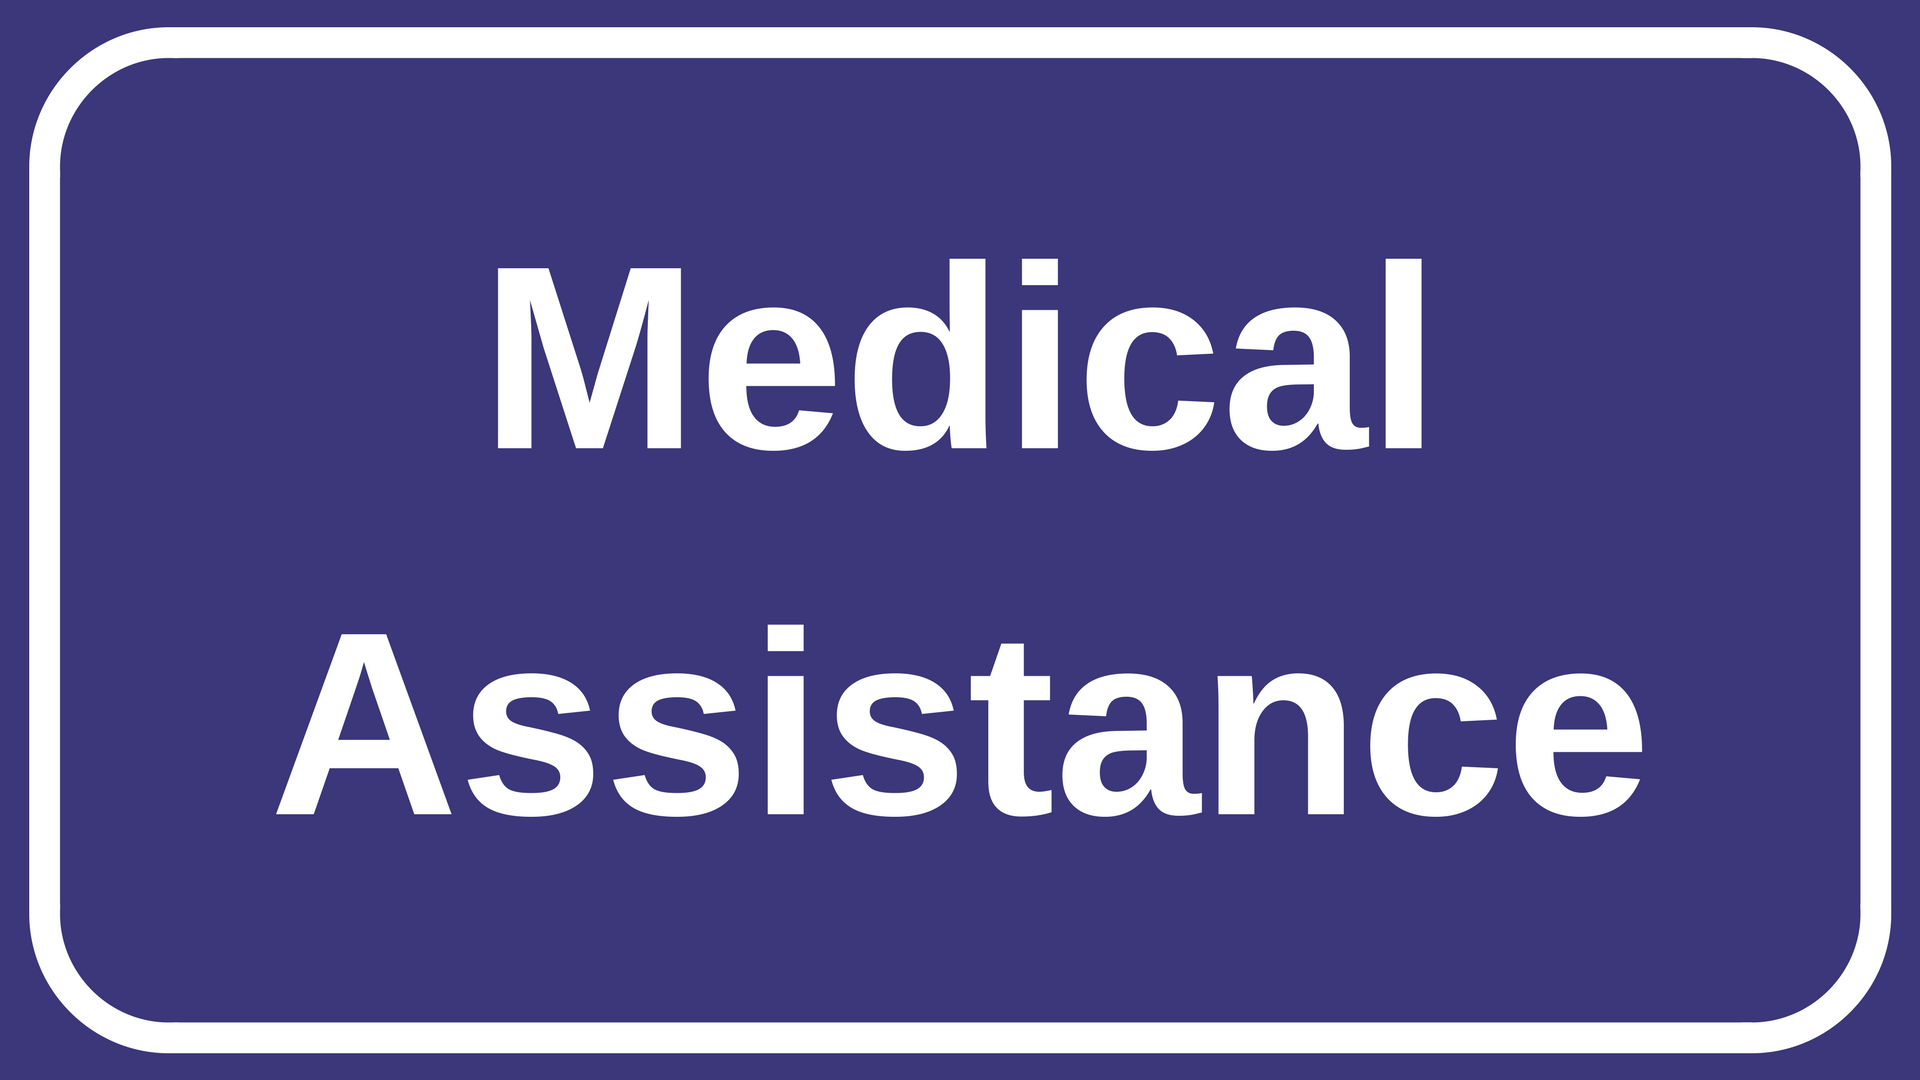 Medical assistance banner